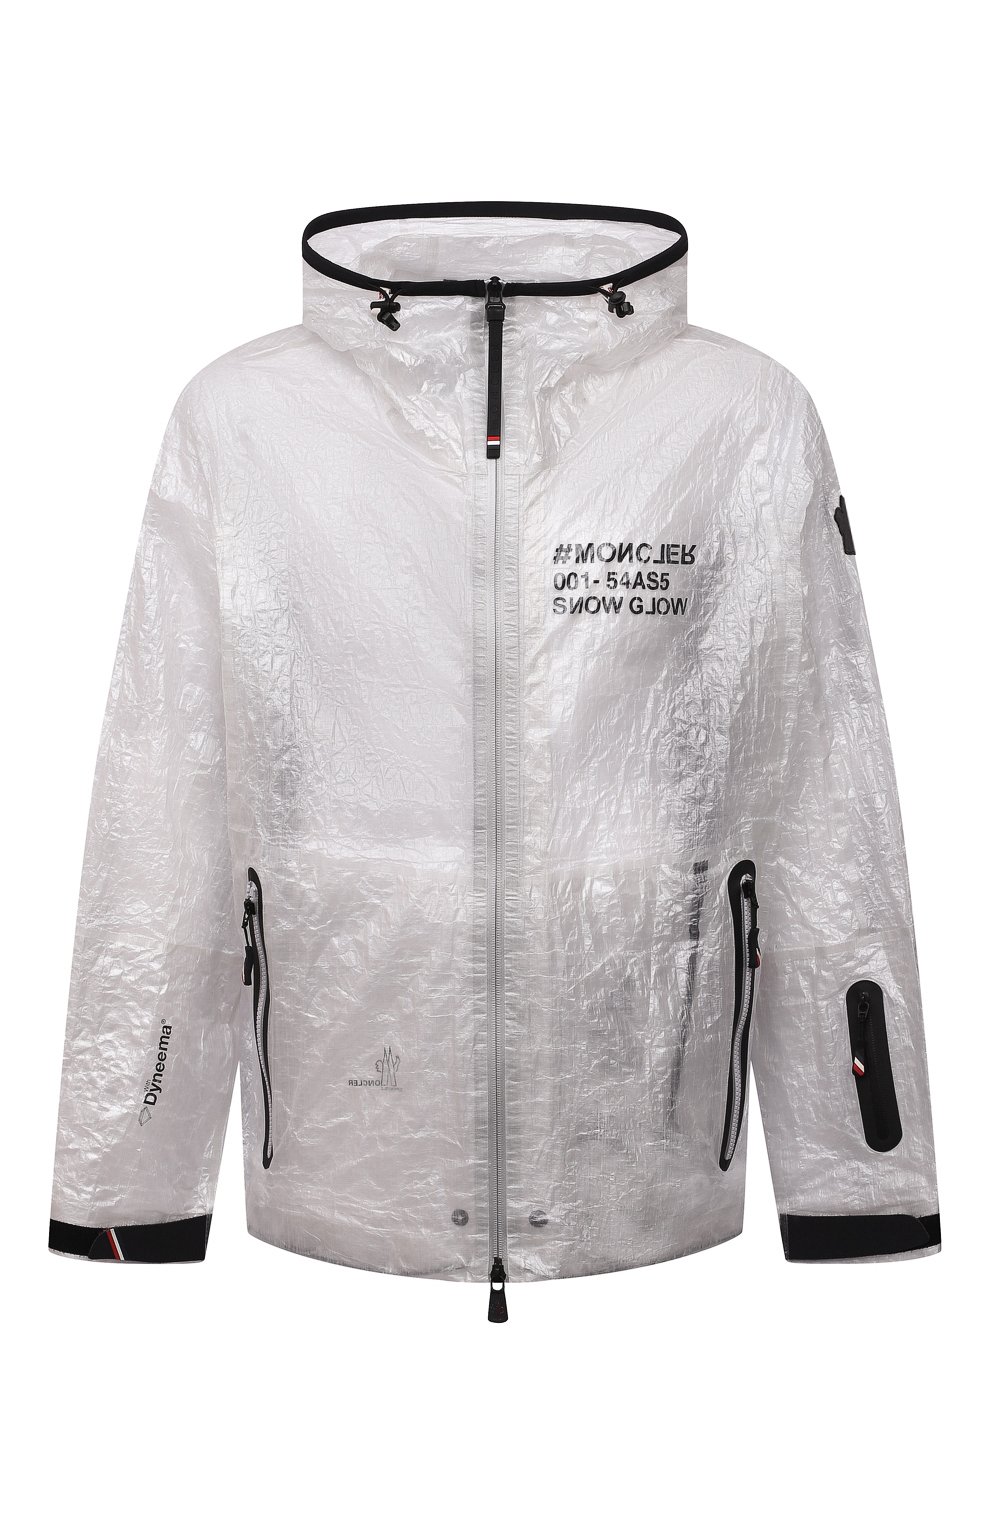 Куртки Moncler Grenoble, Куртка Croset Moncler Grenoble, Румыния, Белый, Волокно полиэтиленовое: 100%;, 12482907  - купить